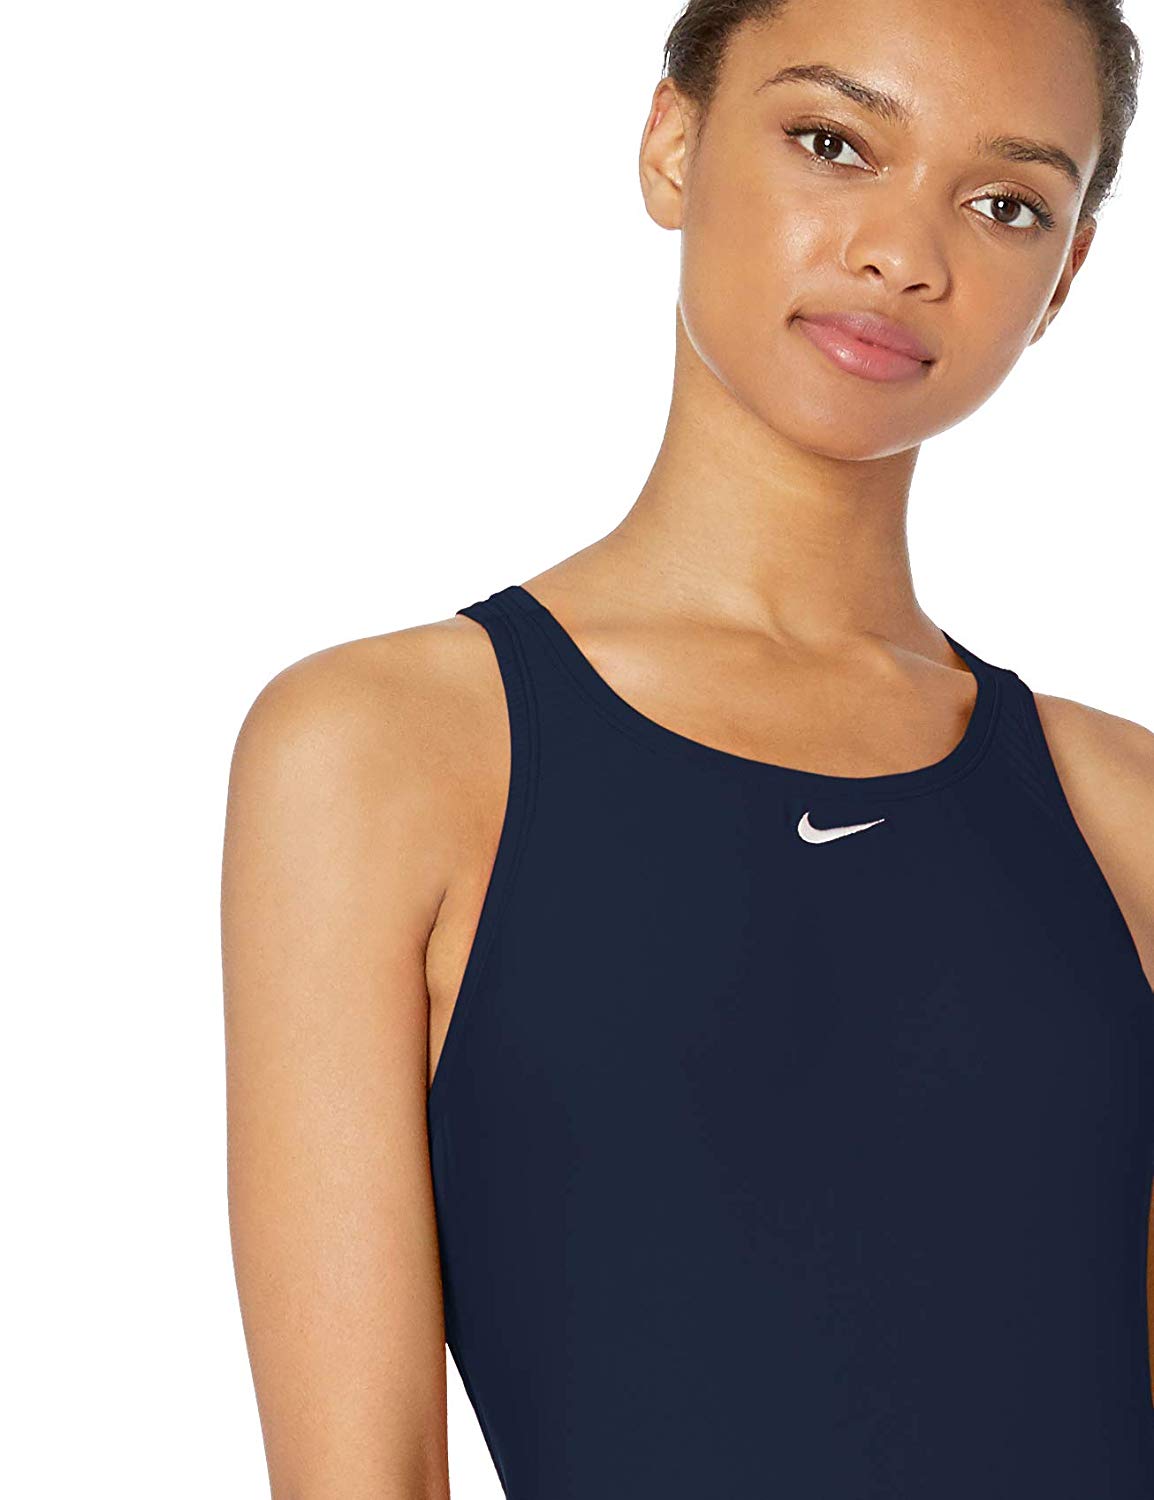 Nike Swim Womens Fast Back One Piece Swimsuit Midnight Midnight Navy Size 34 30673024188 Ebay